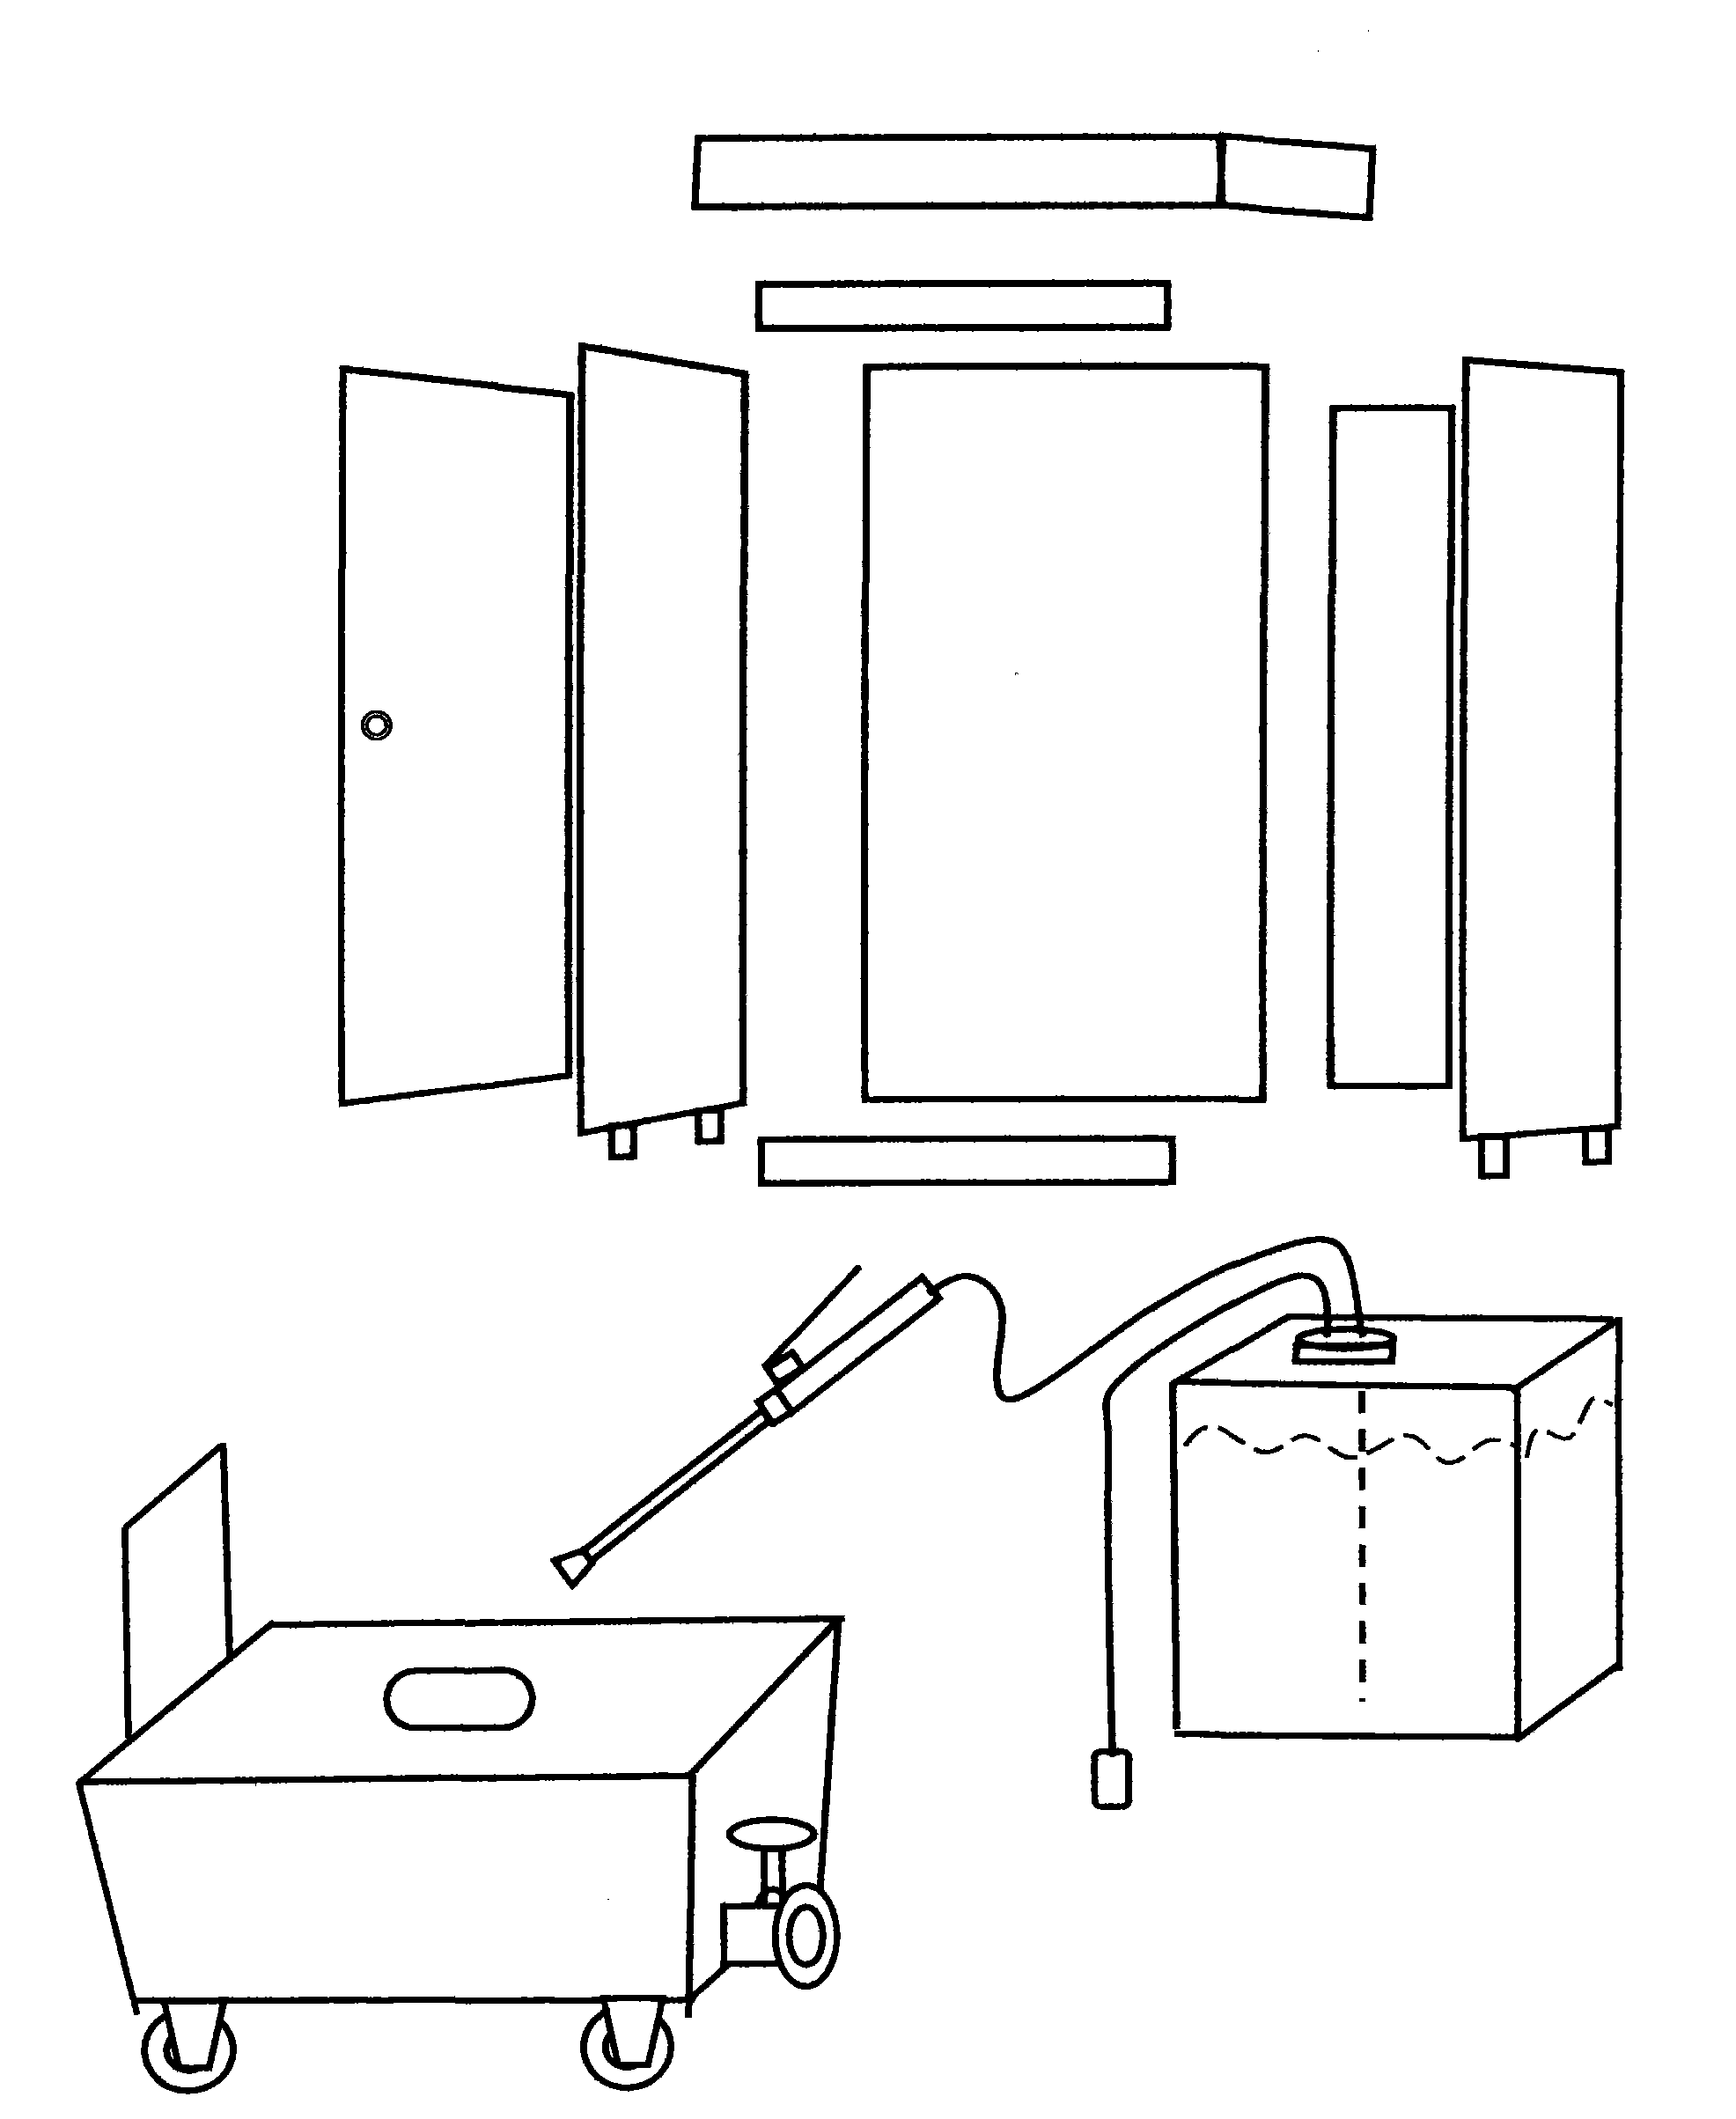 Modularization mobile toilet